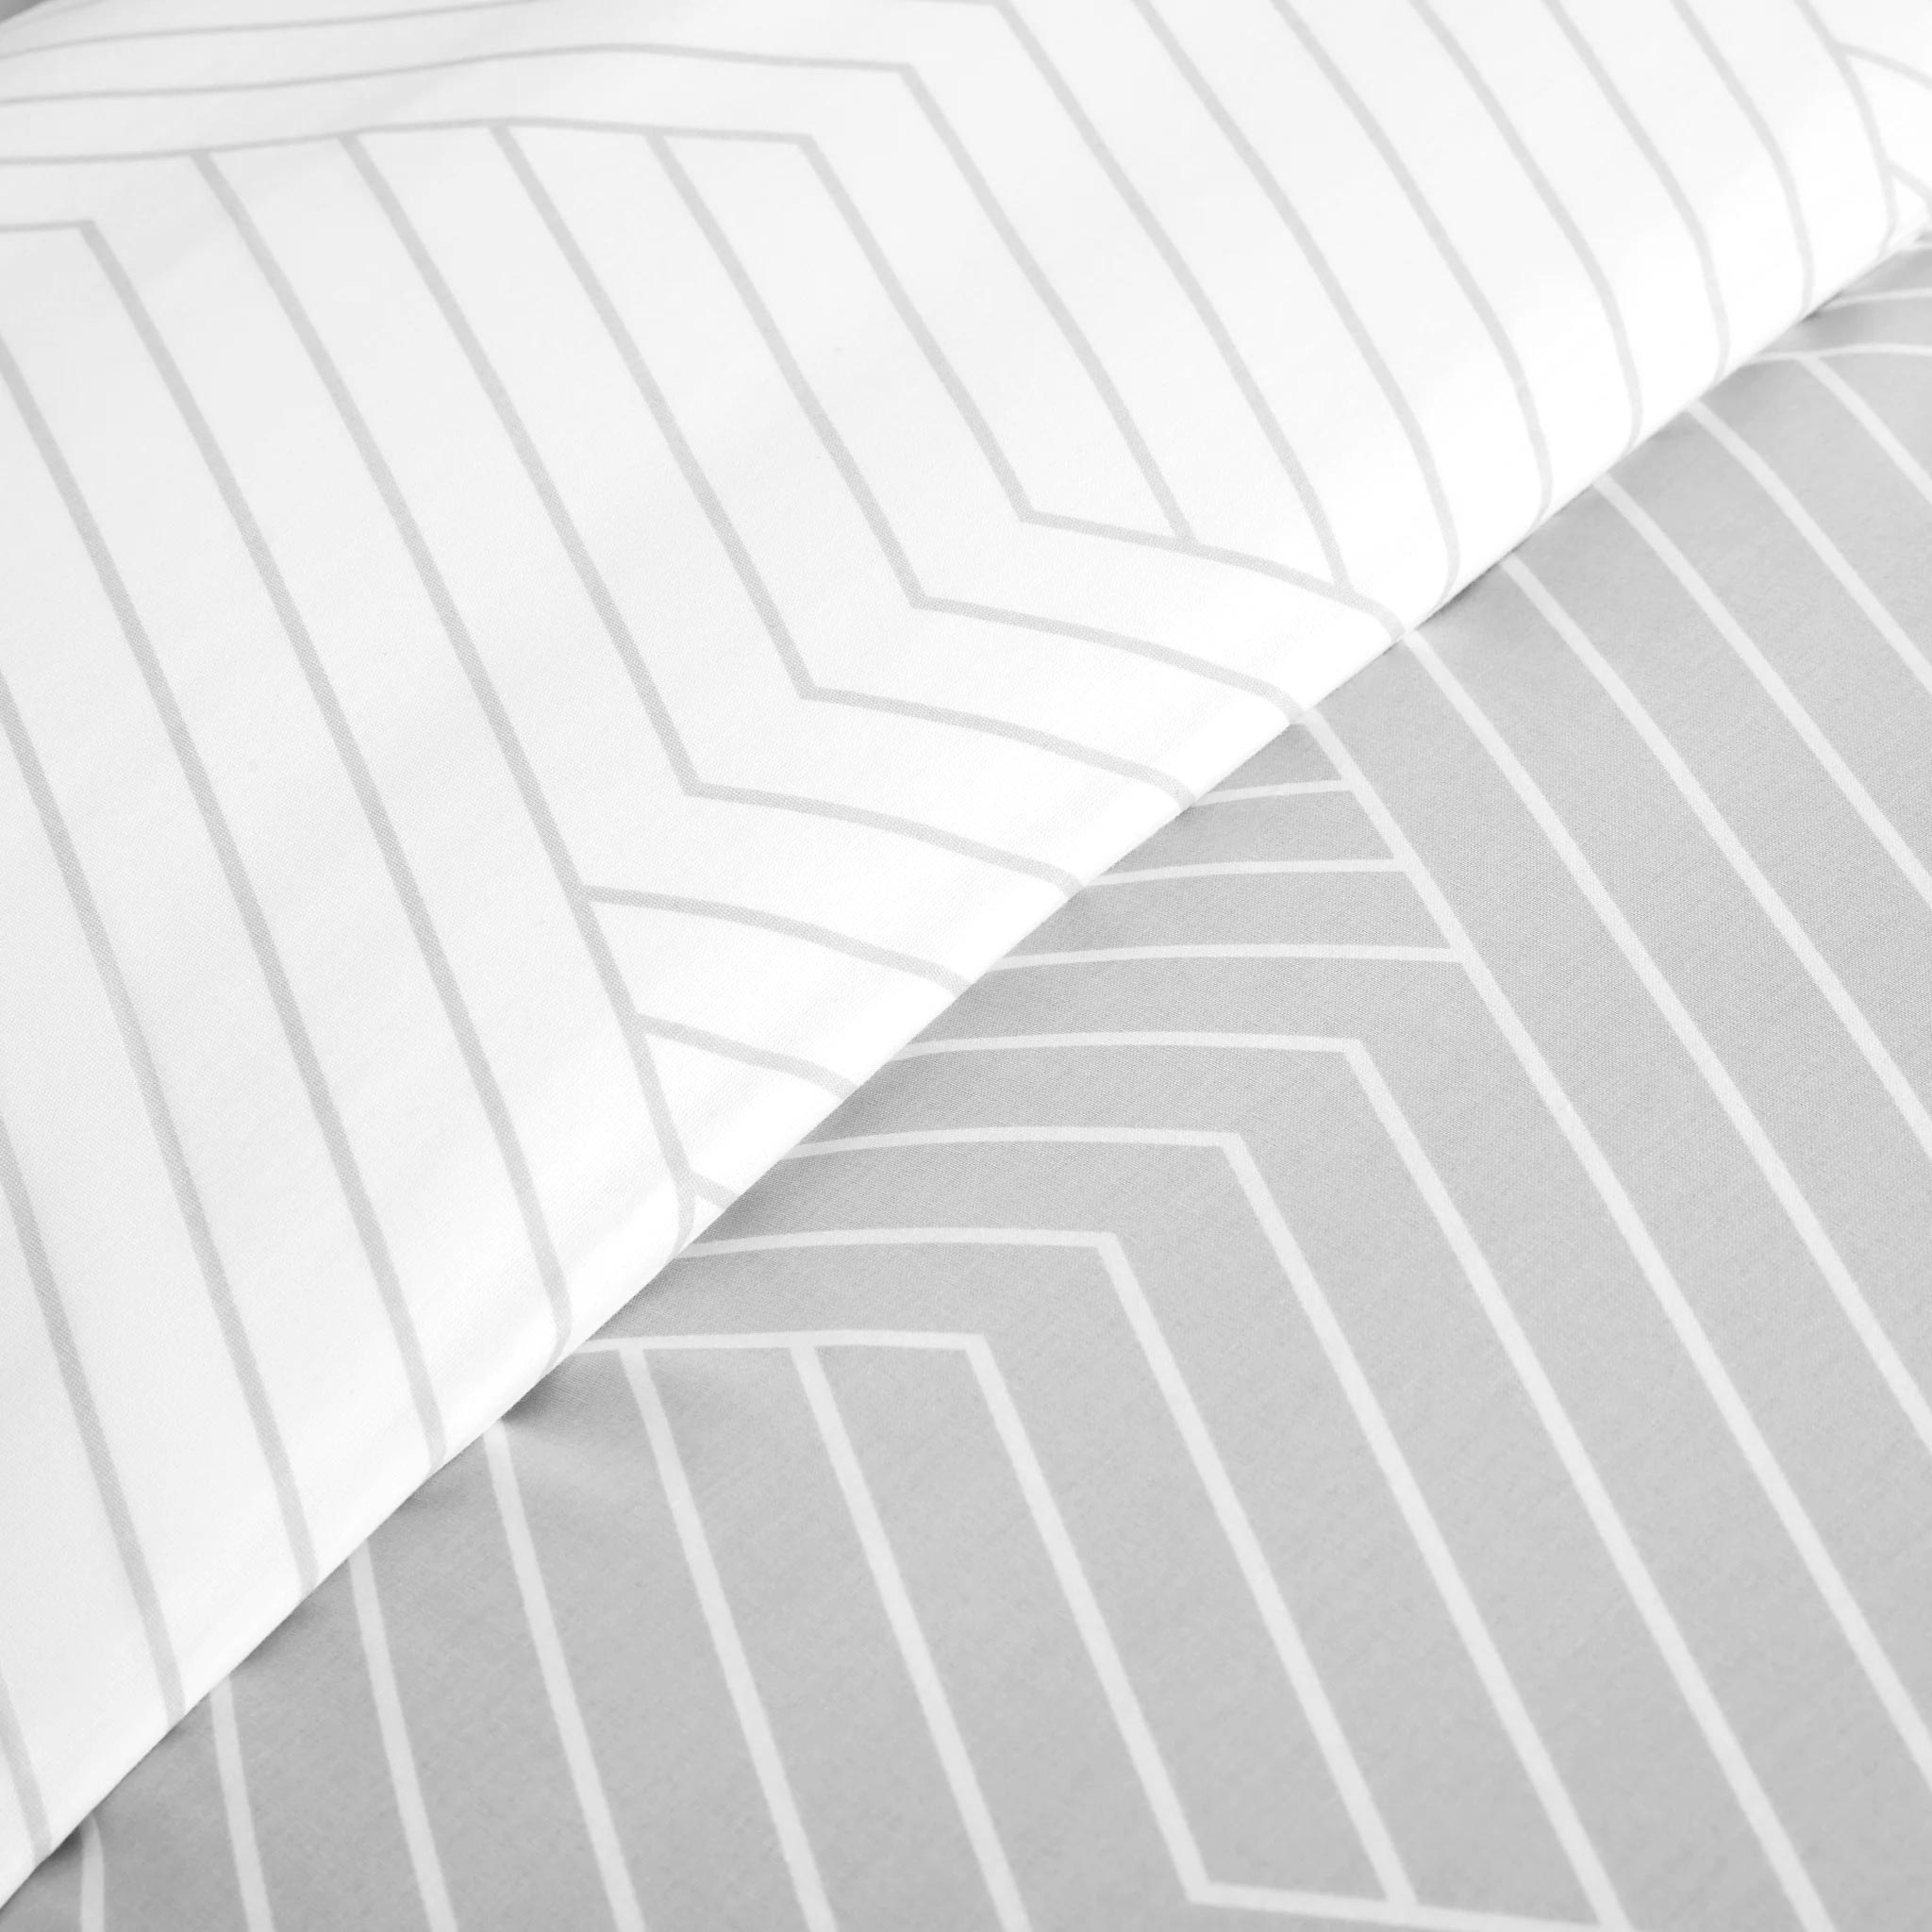 Oslo Light Grey Chevron Cotton Duvet Cover Bedding Set